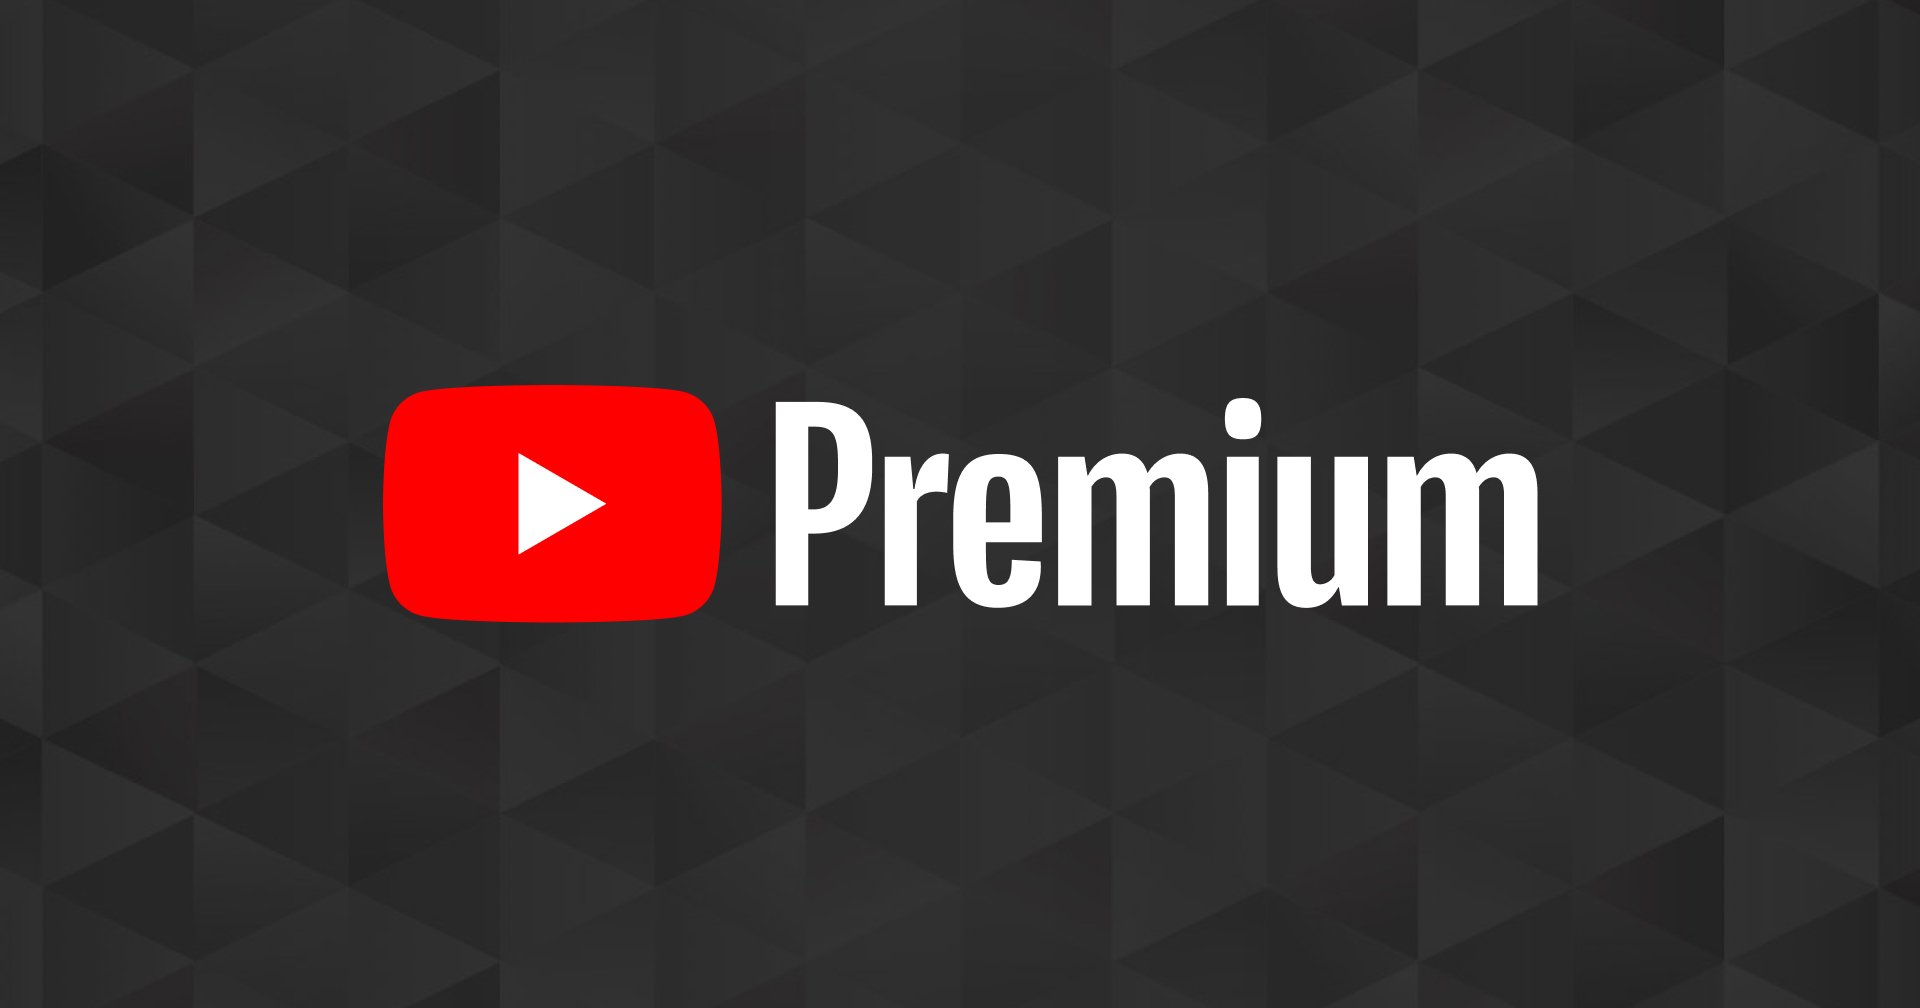 ย้ายค่ายด่วน YouTube Premium ขึ้นราคาเป็น 399 บาทต่อเดือน สำหรับผู้ชำระผ่าน Apple